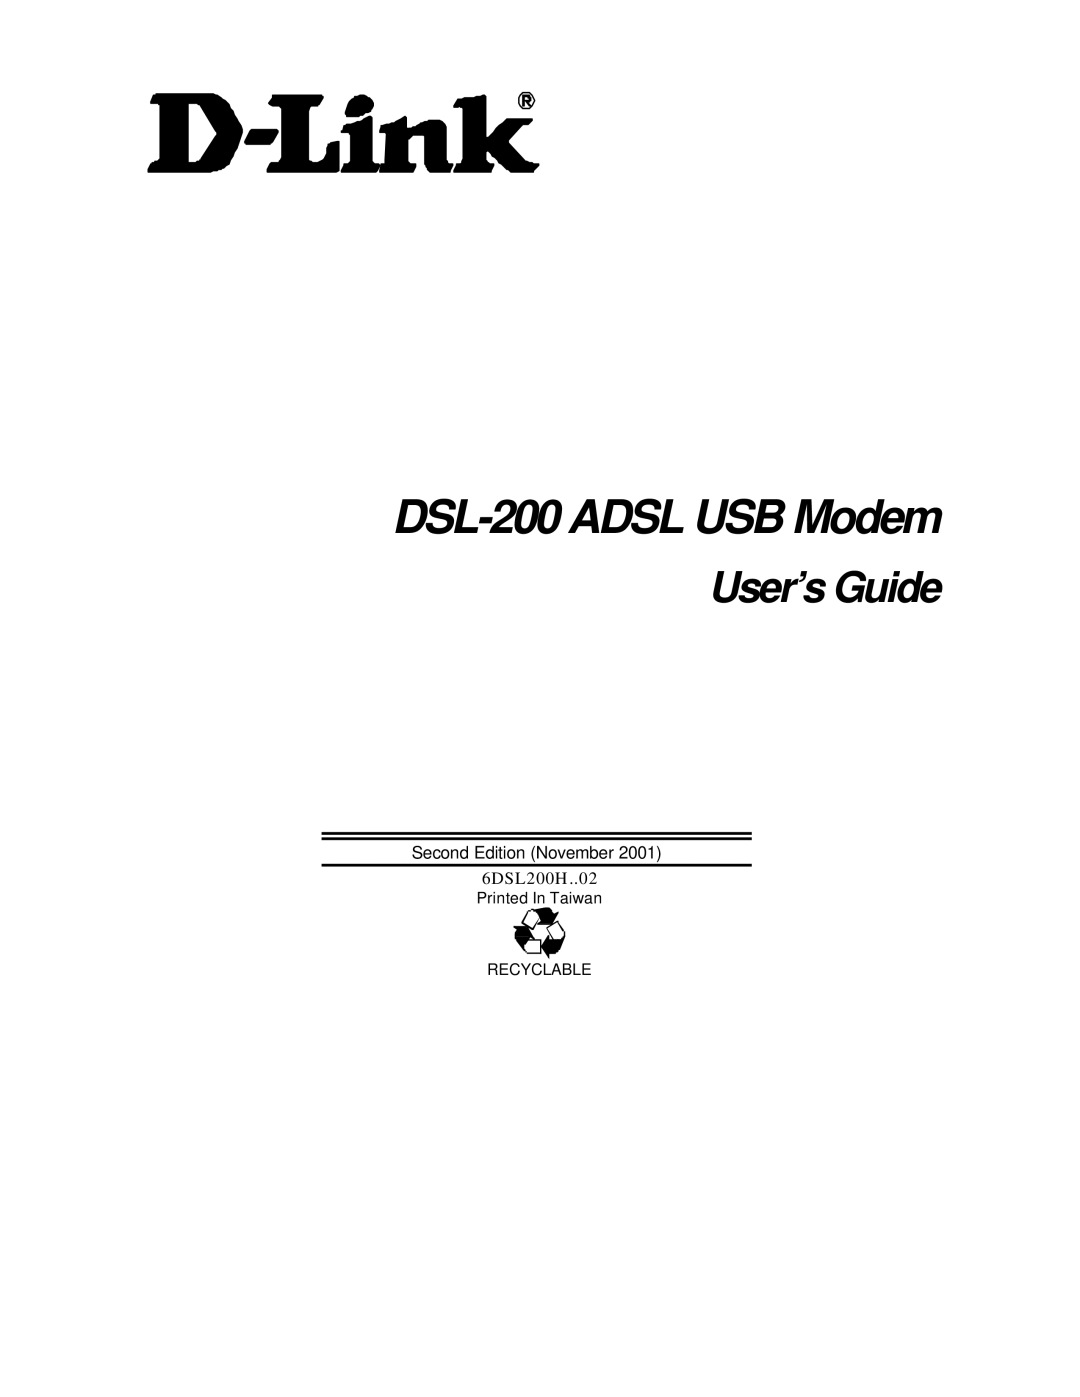 D-Link manual DSL-200 Adsl USB Modem 